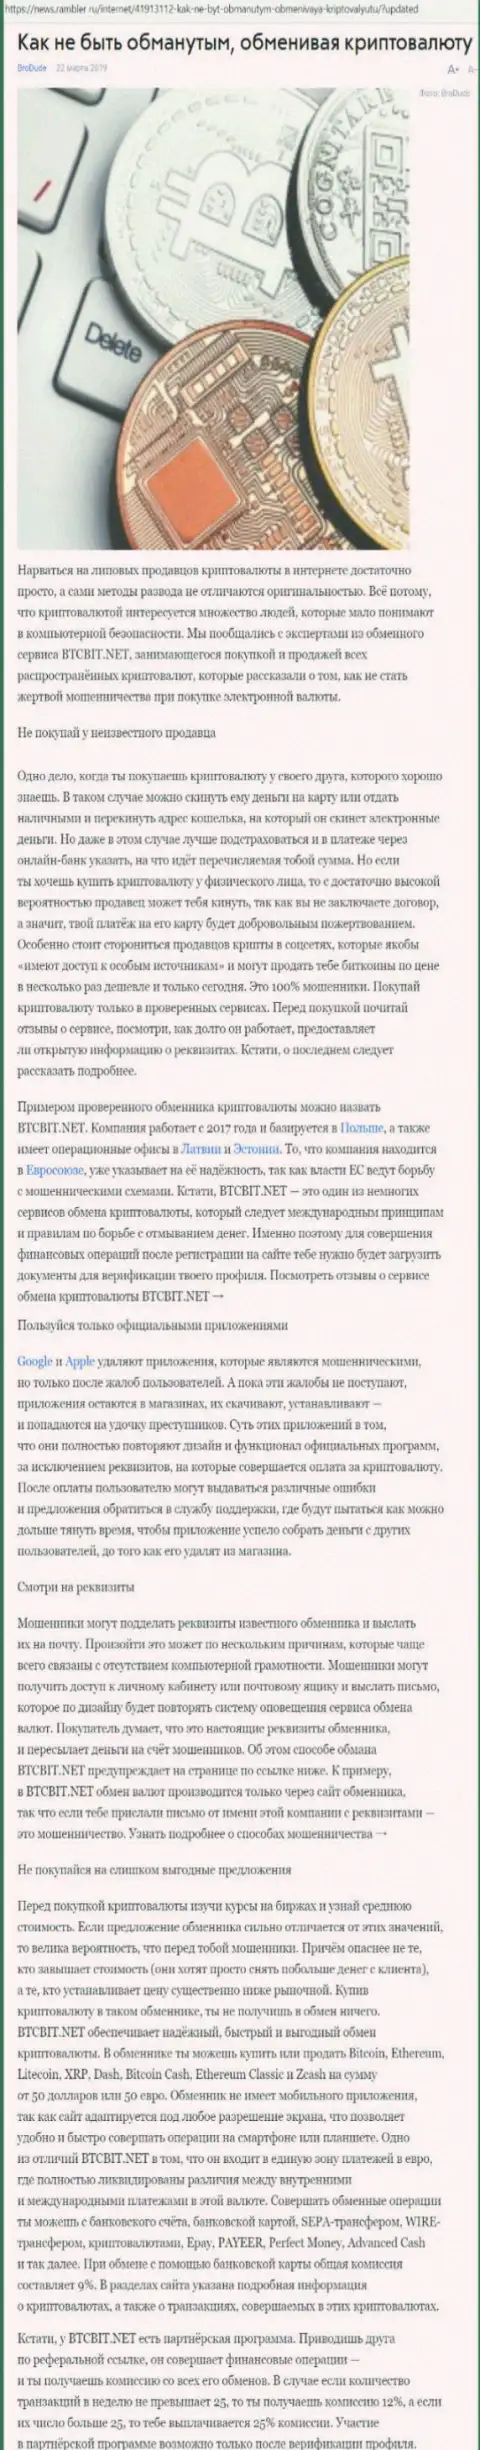 Статья об online-обменнике BTC Bit на news rambler ru